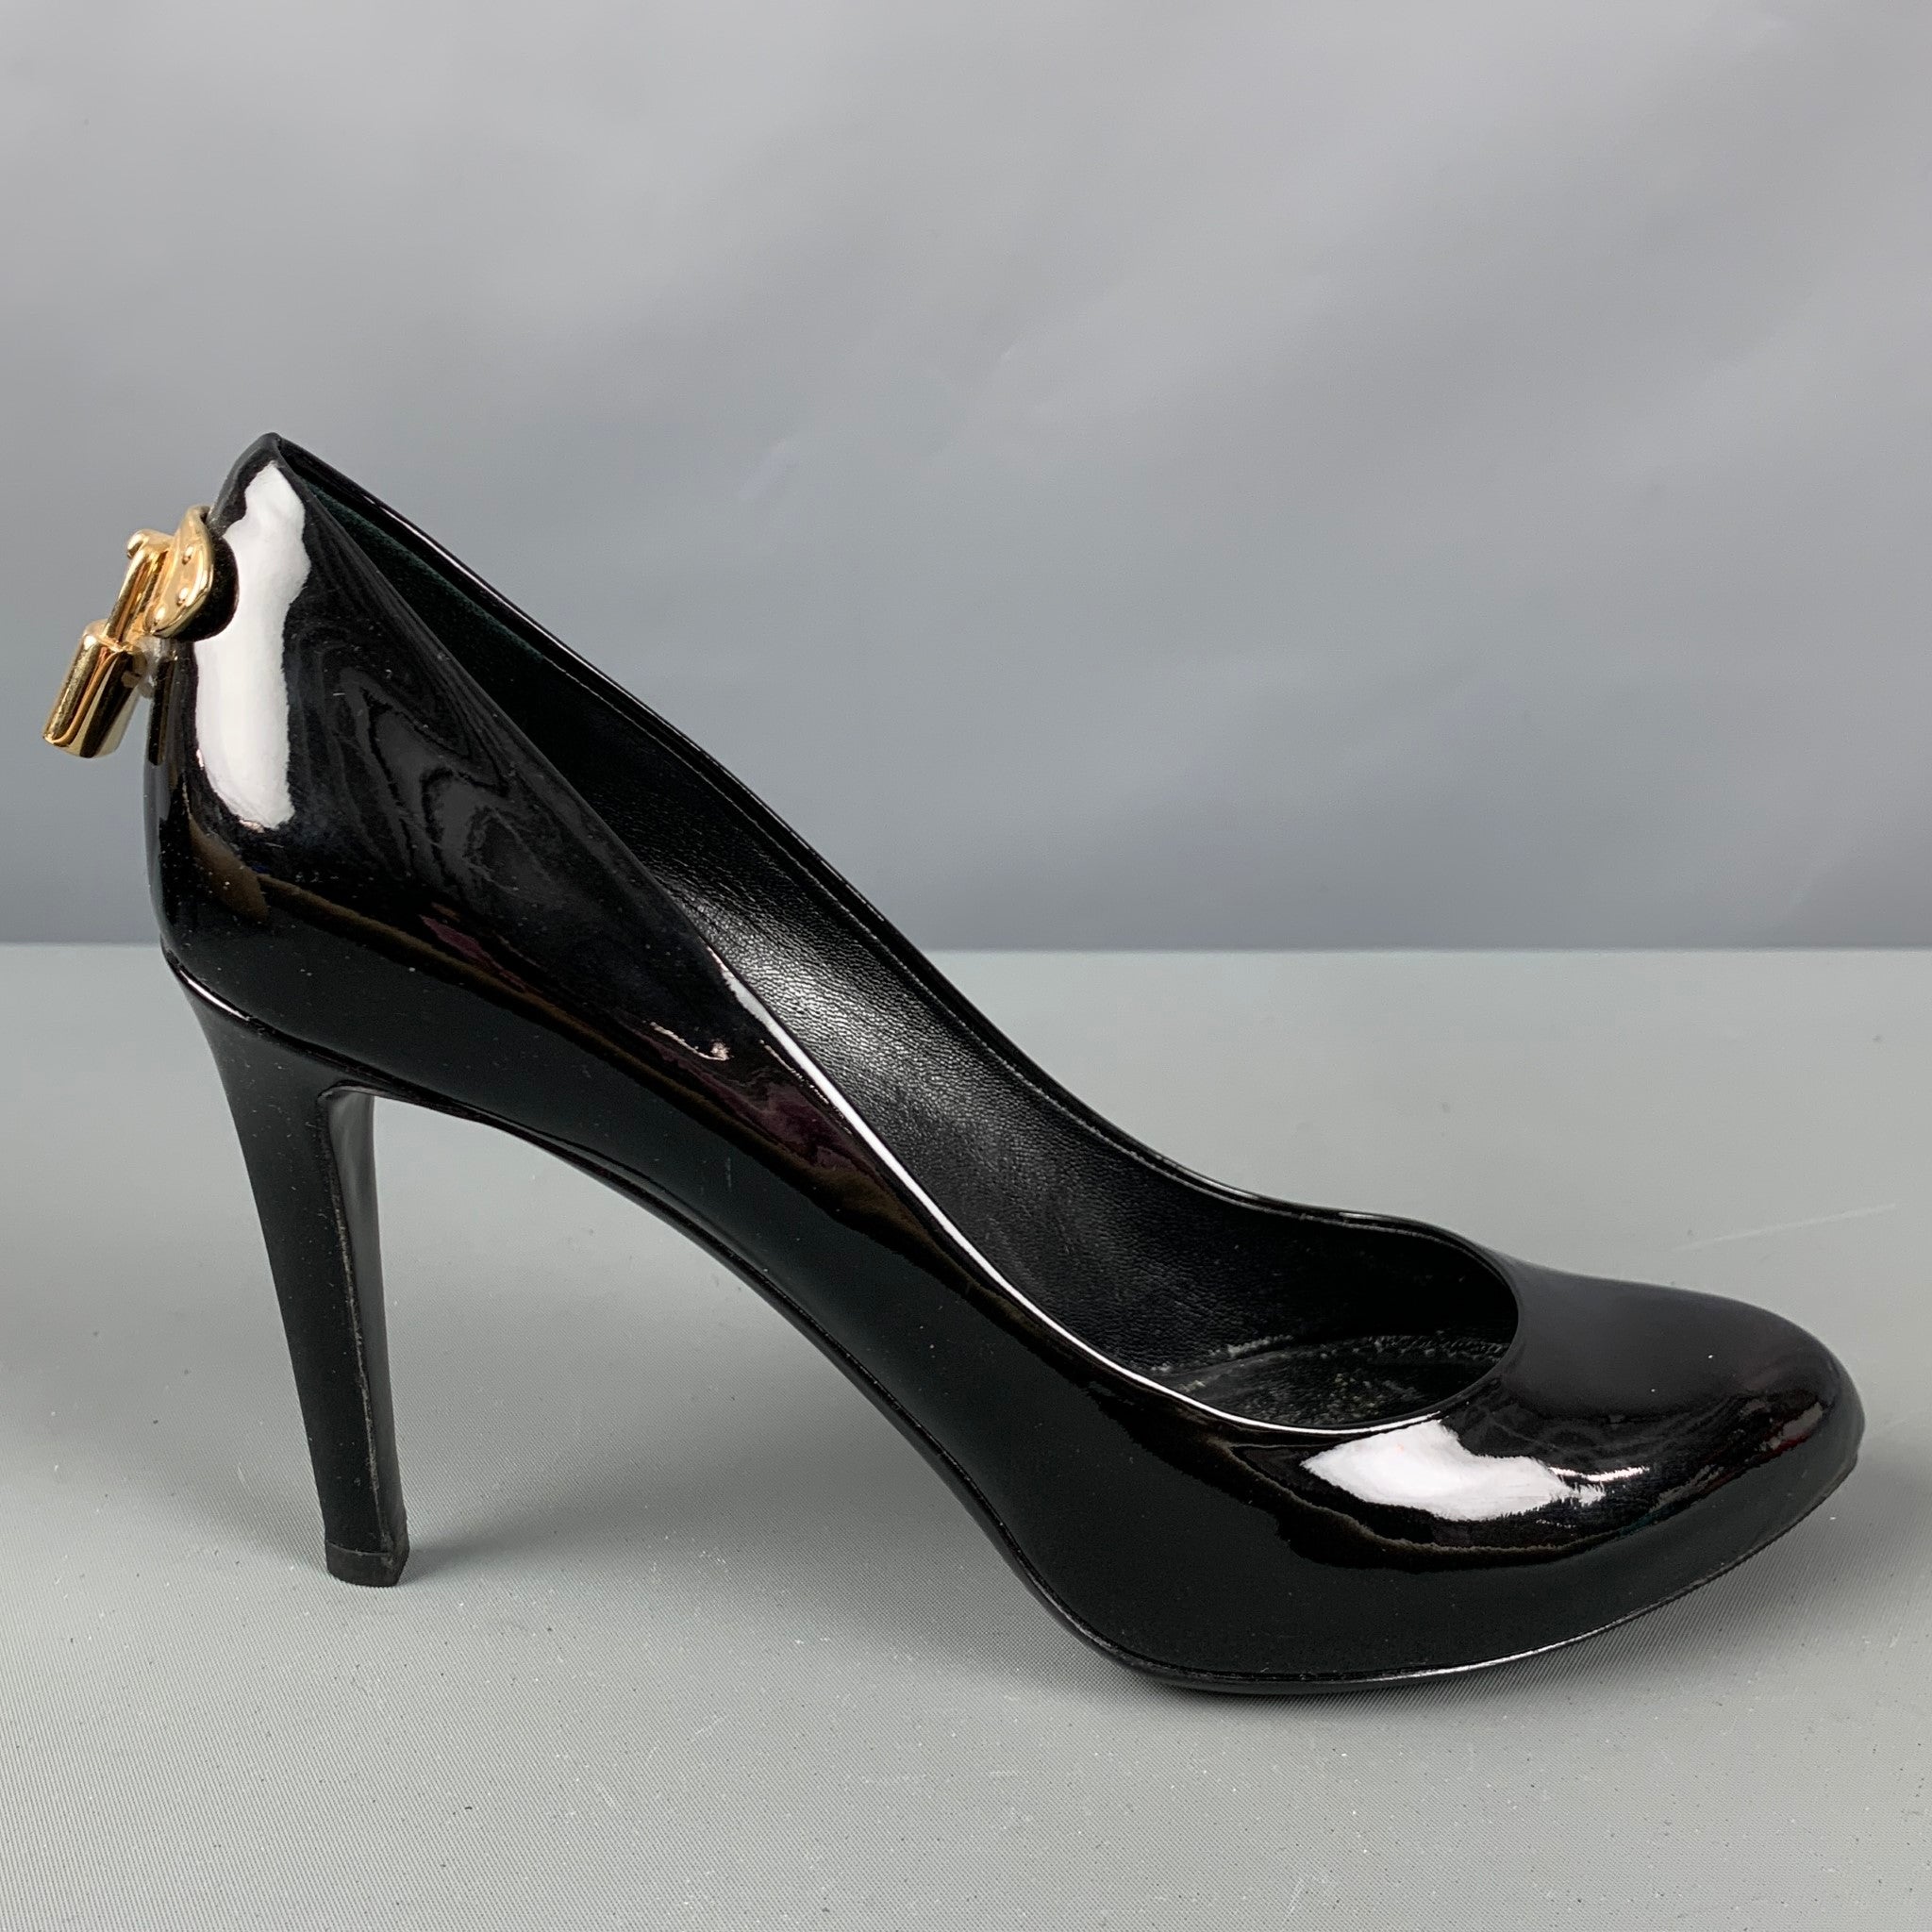 Pleaser SEDUCE-420 5 Inch Heel Black Patent Plus Size Classic Pumps –  Shoecup.com